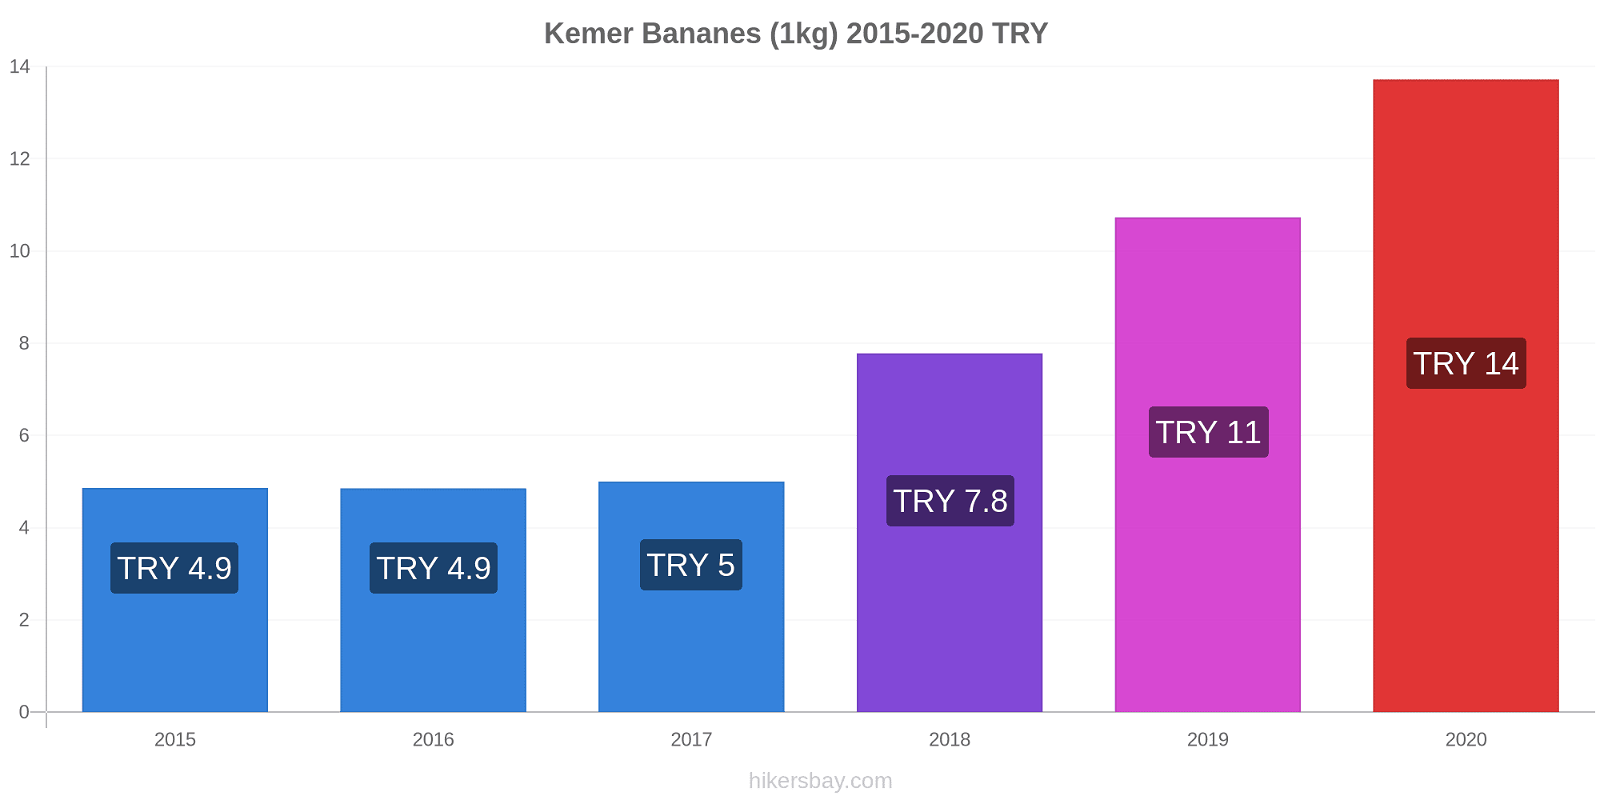 Kemer changements de prix Bananes (1kg) hikersbay.com